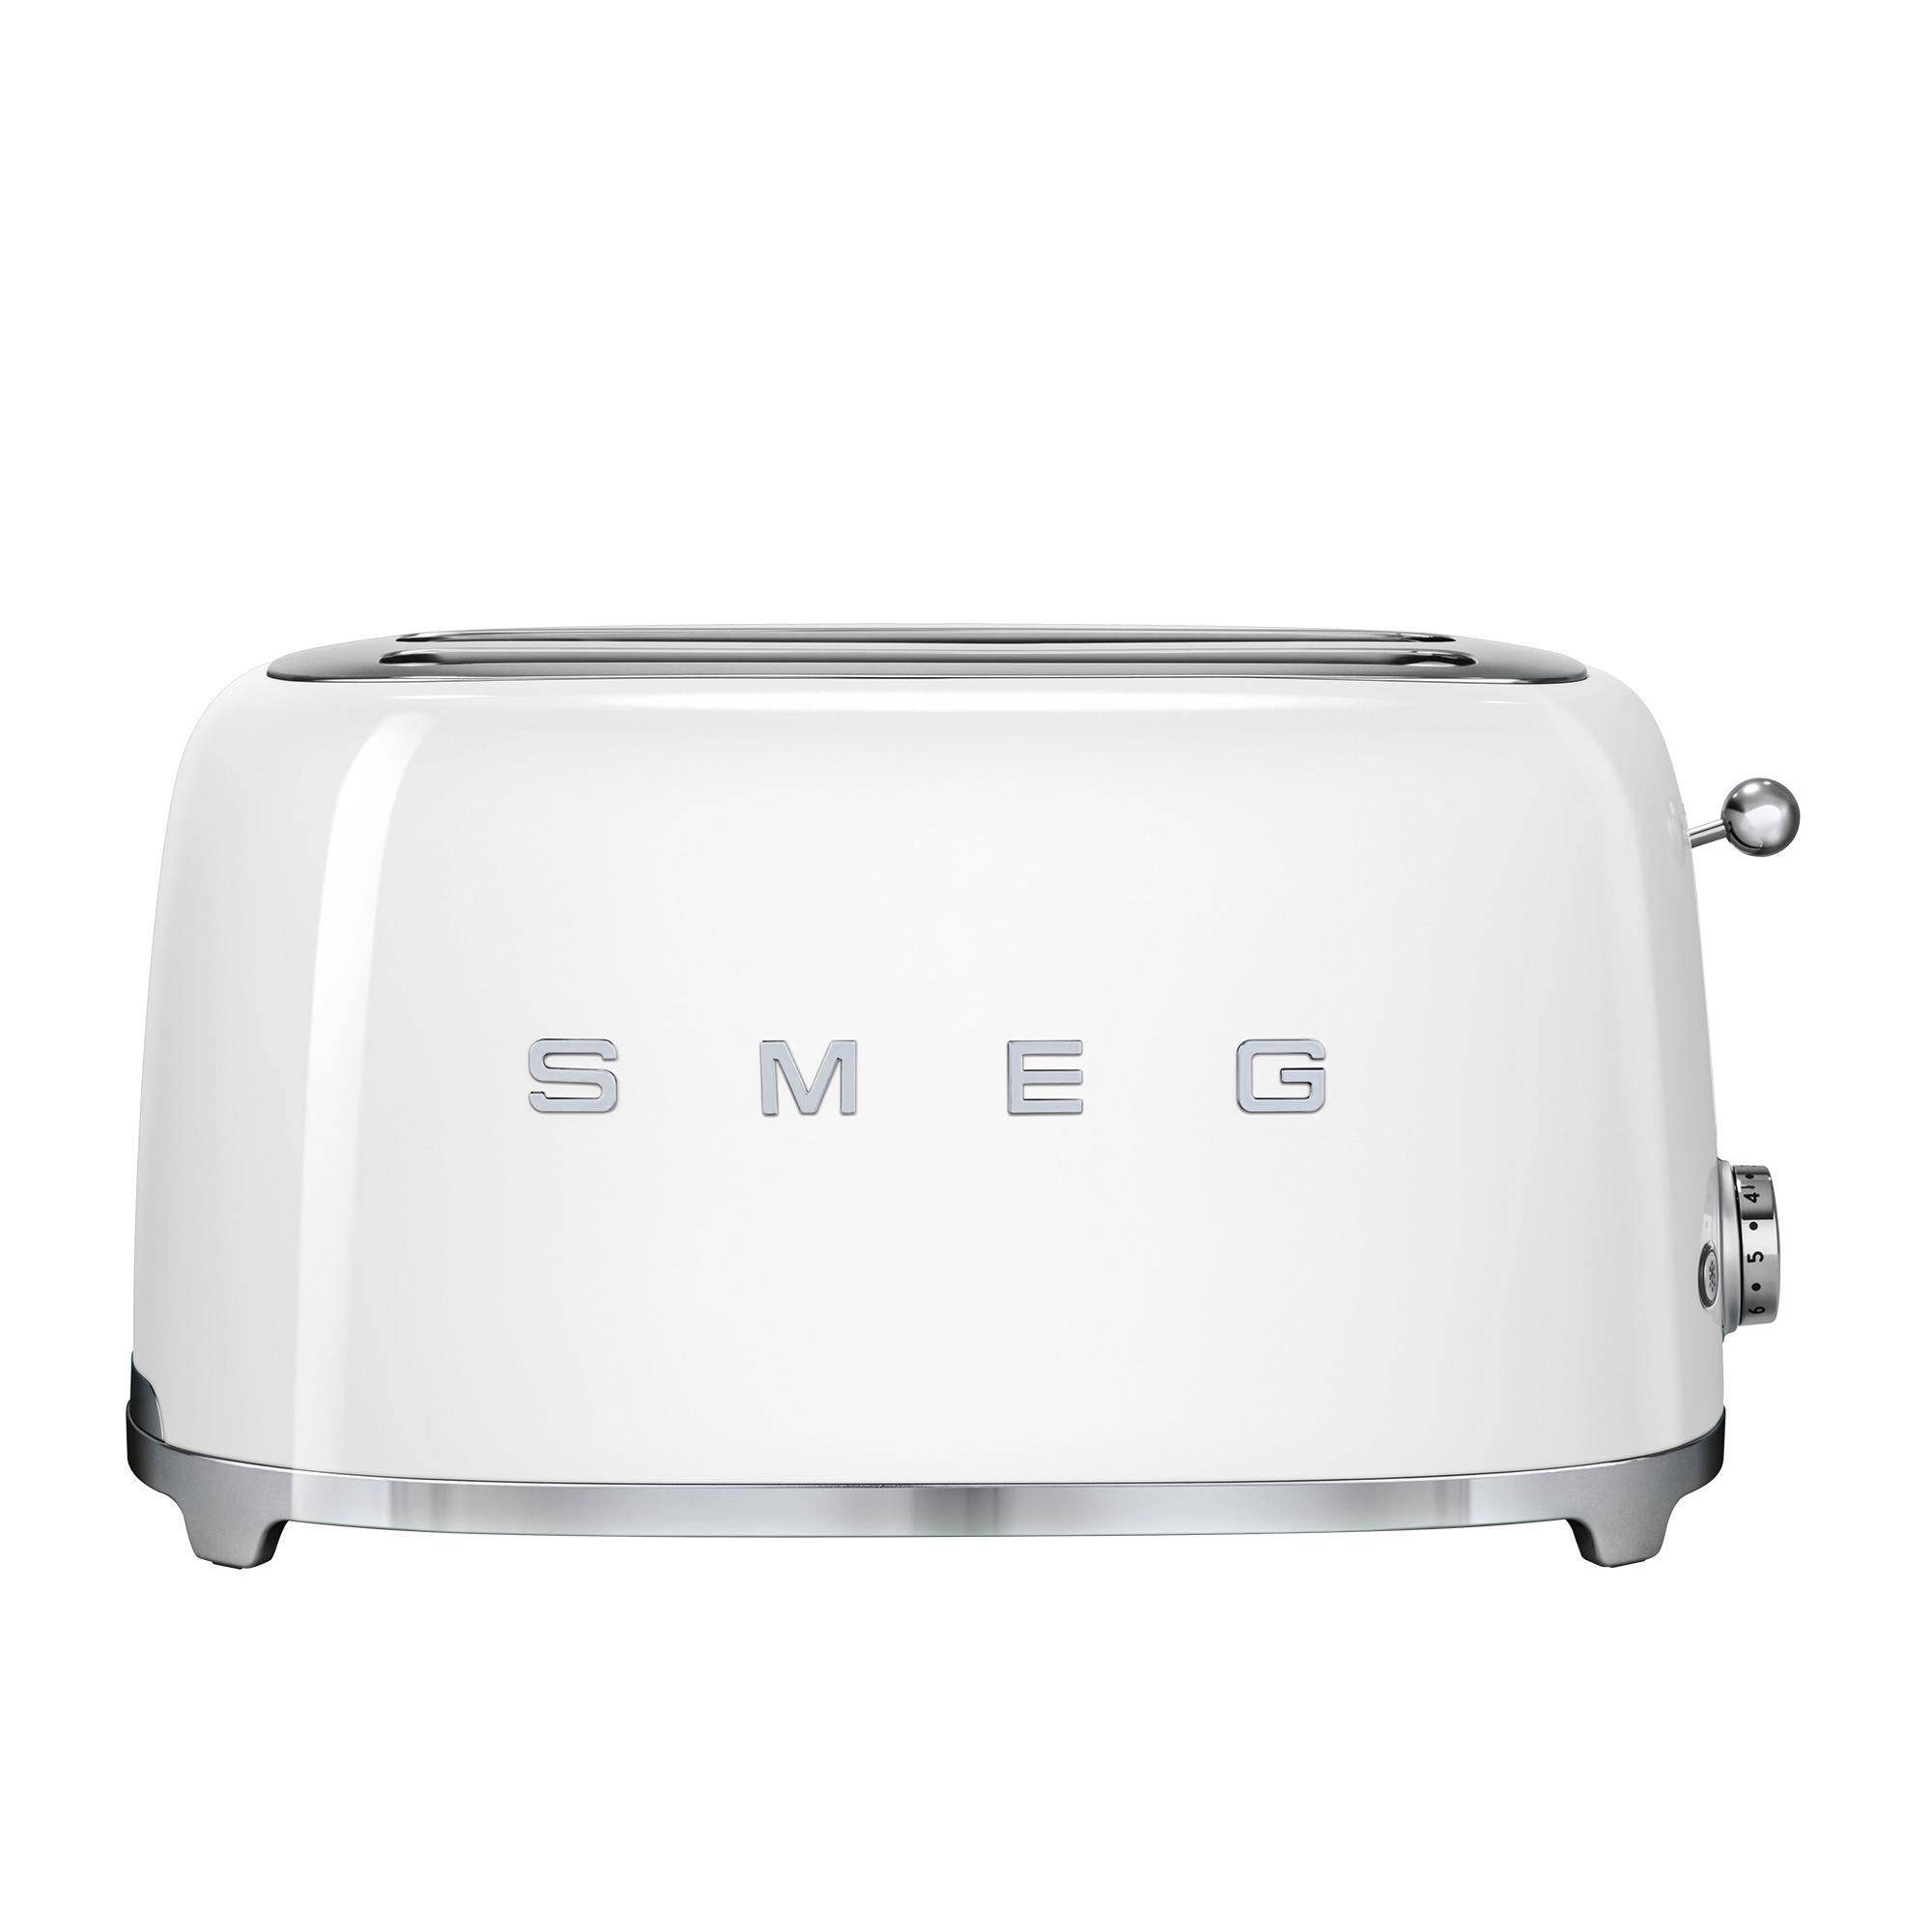 Smeg 50's Retro Style 4 Slice Toaster White Image 3